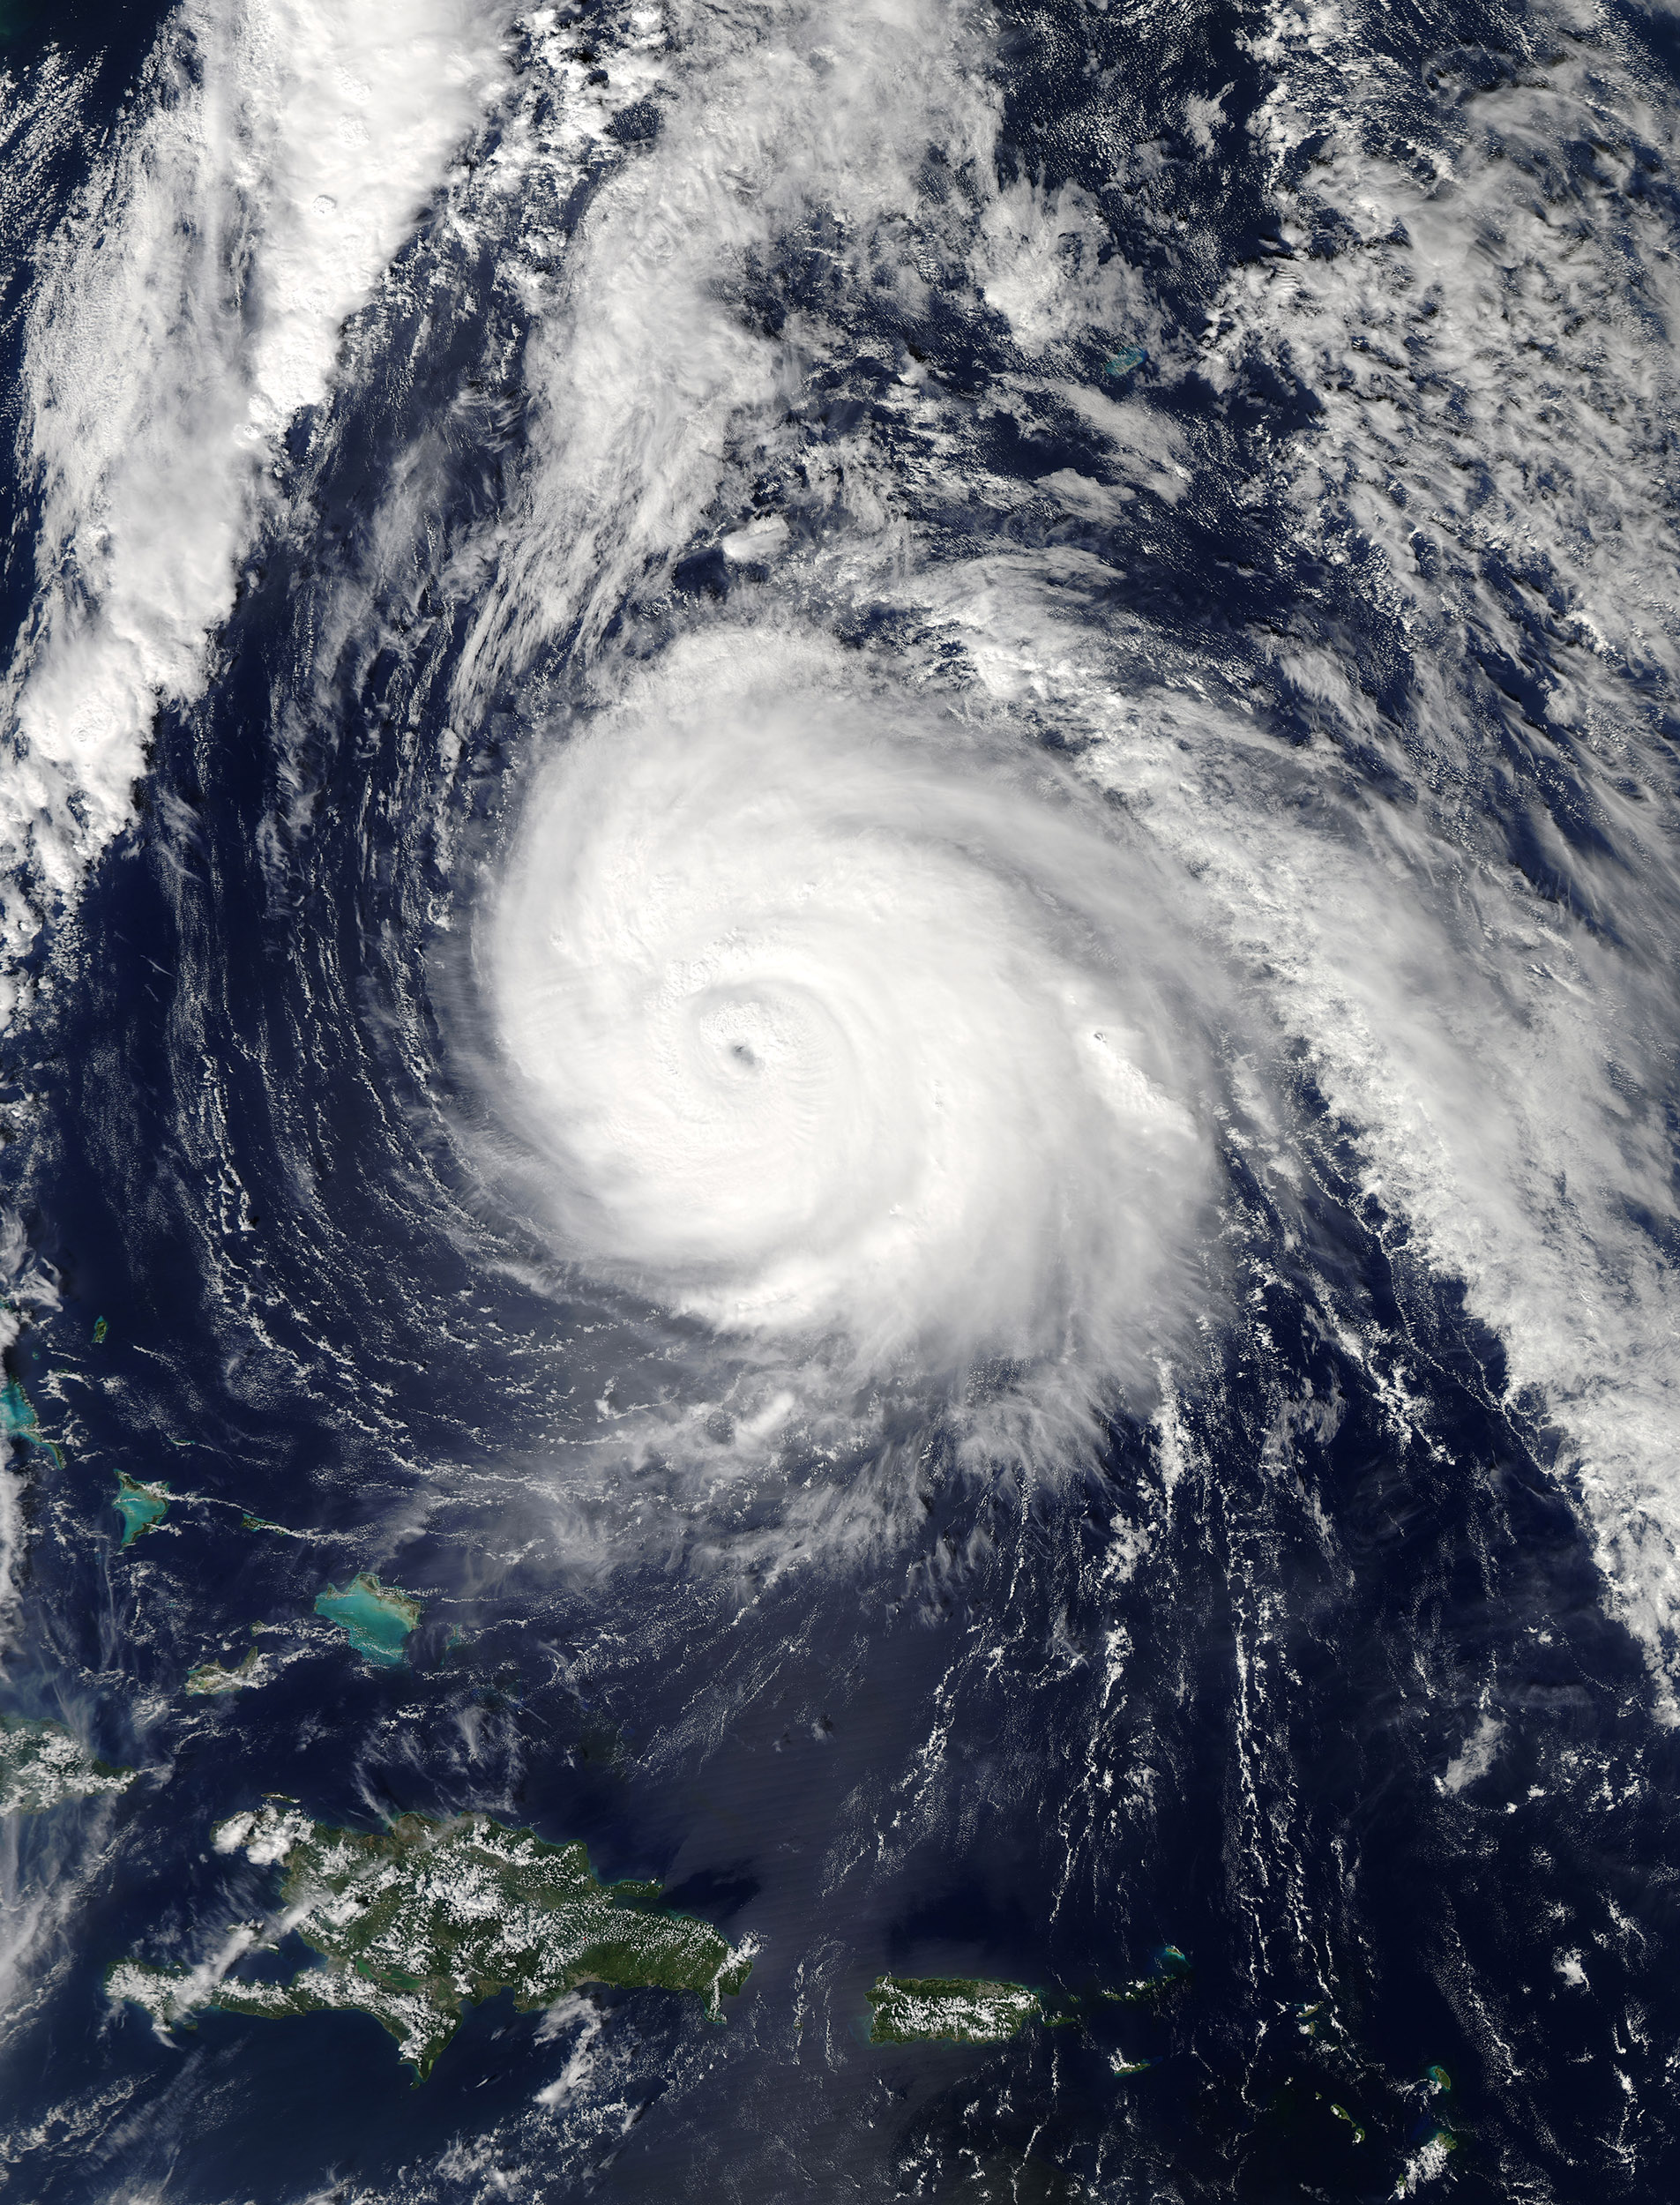 Ende Oktober 2014 sorgte «Gonzalo» in vielen Teilen Europas für grosse Unwetter. Auch die Schweiz wurde von diesem ehemaligen Hurrikan in Mitleidenschaft gezogen. Das Satellitenbild zeigt den Sturm am 16. Oktober 2014 zwischen der Karibik und Bermuda. Bild: NASA